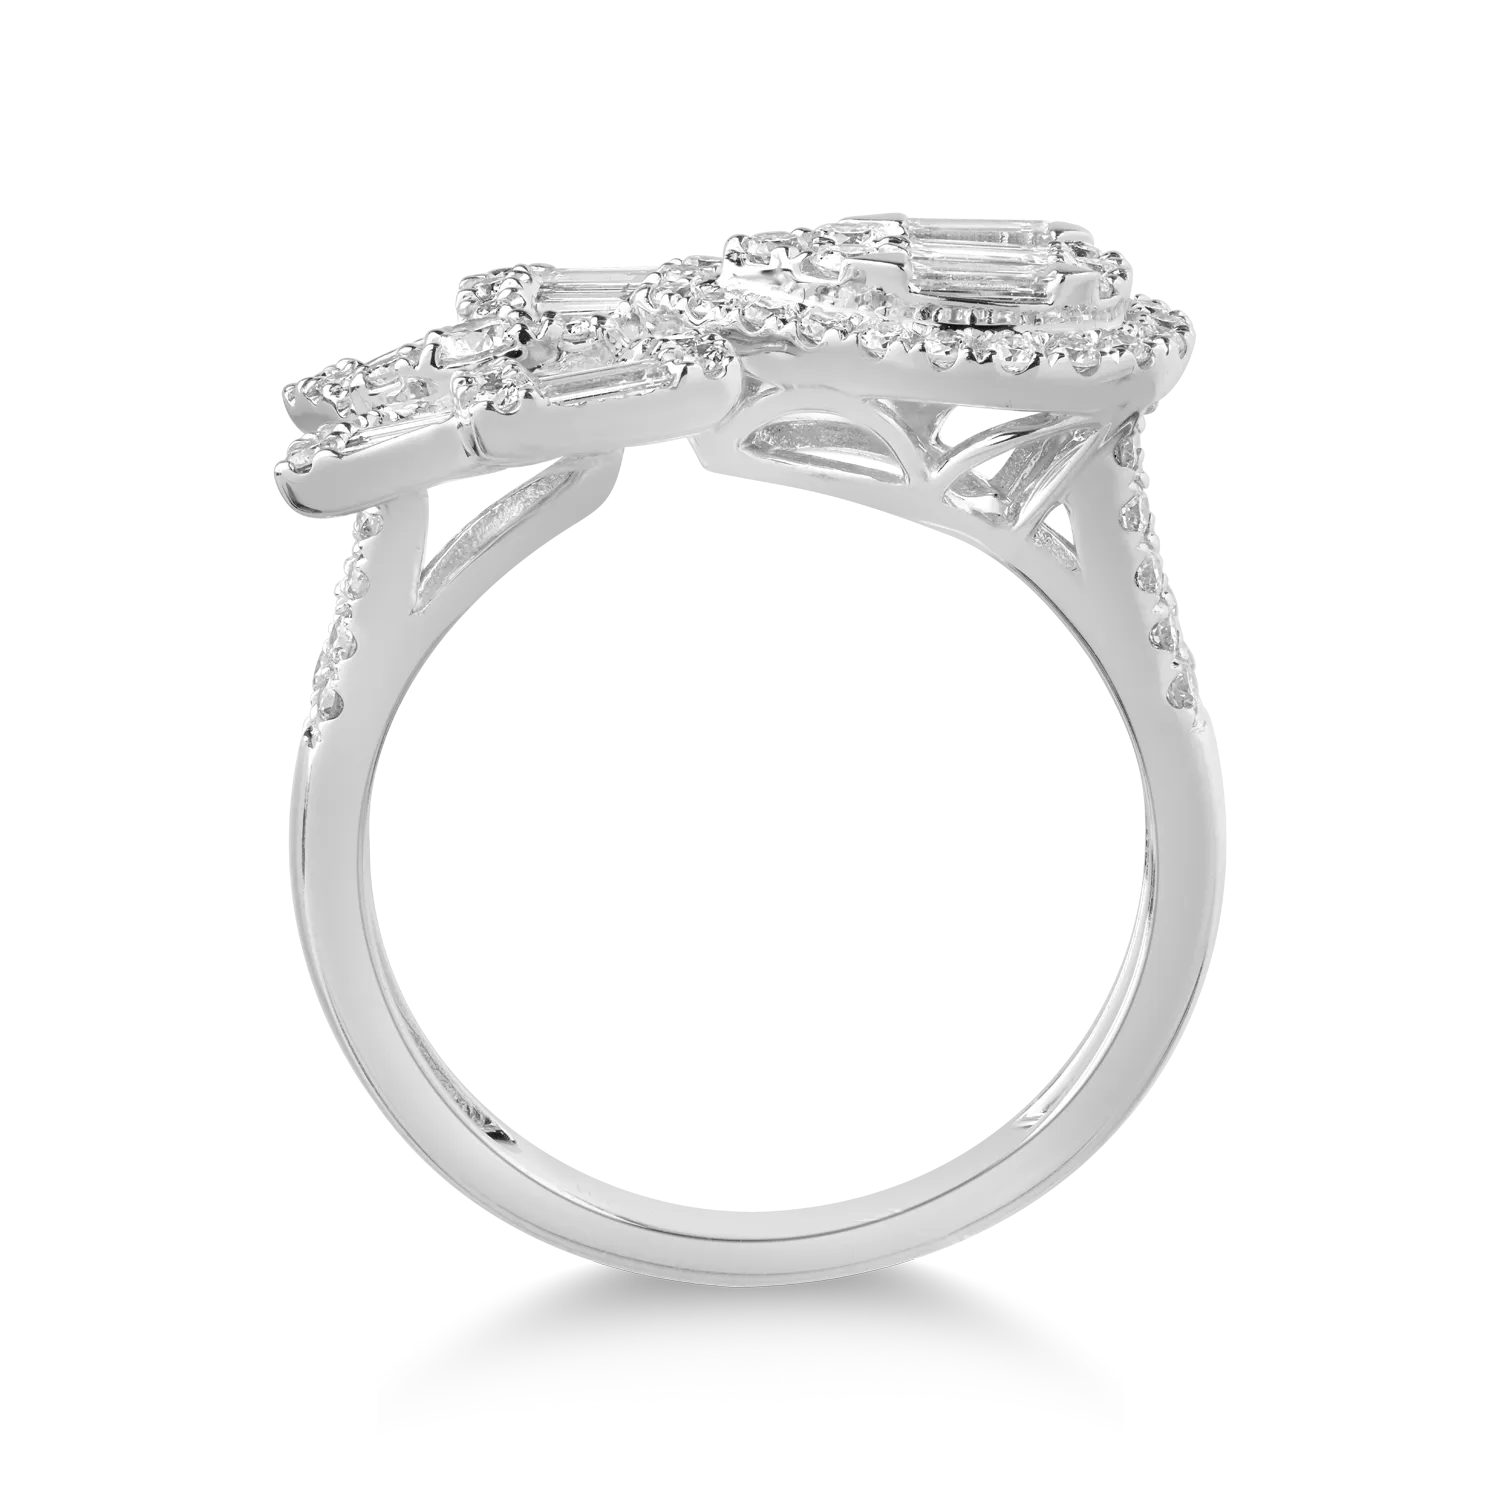 18K fehérarany gyűrű 1,08 karátos gyémántokkal